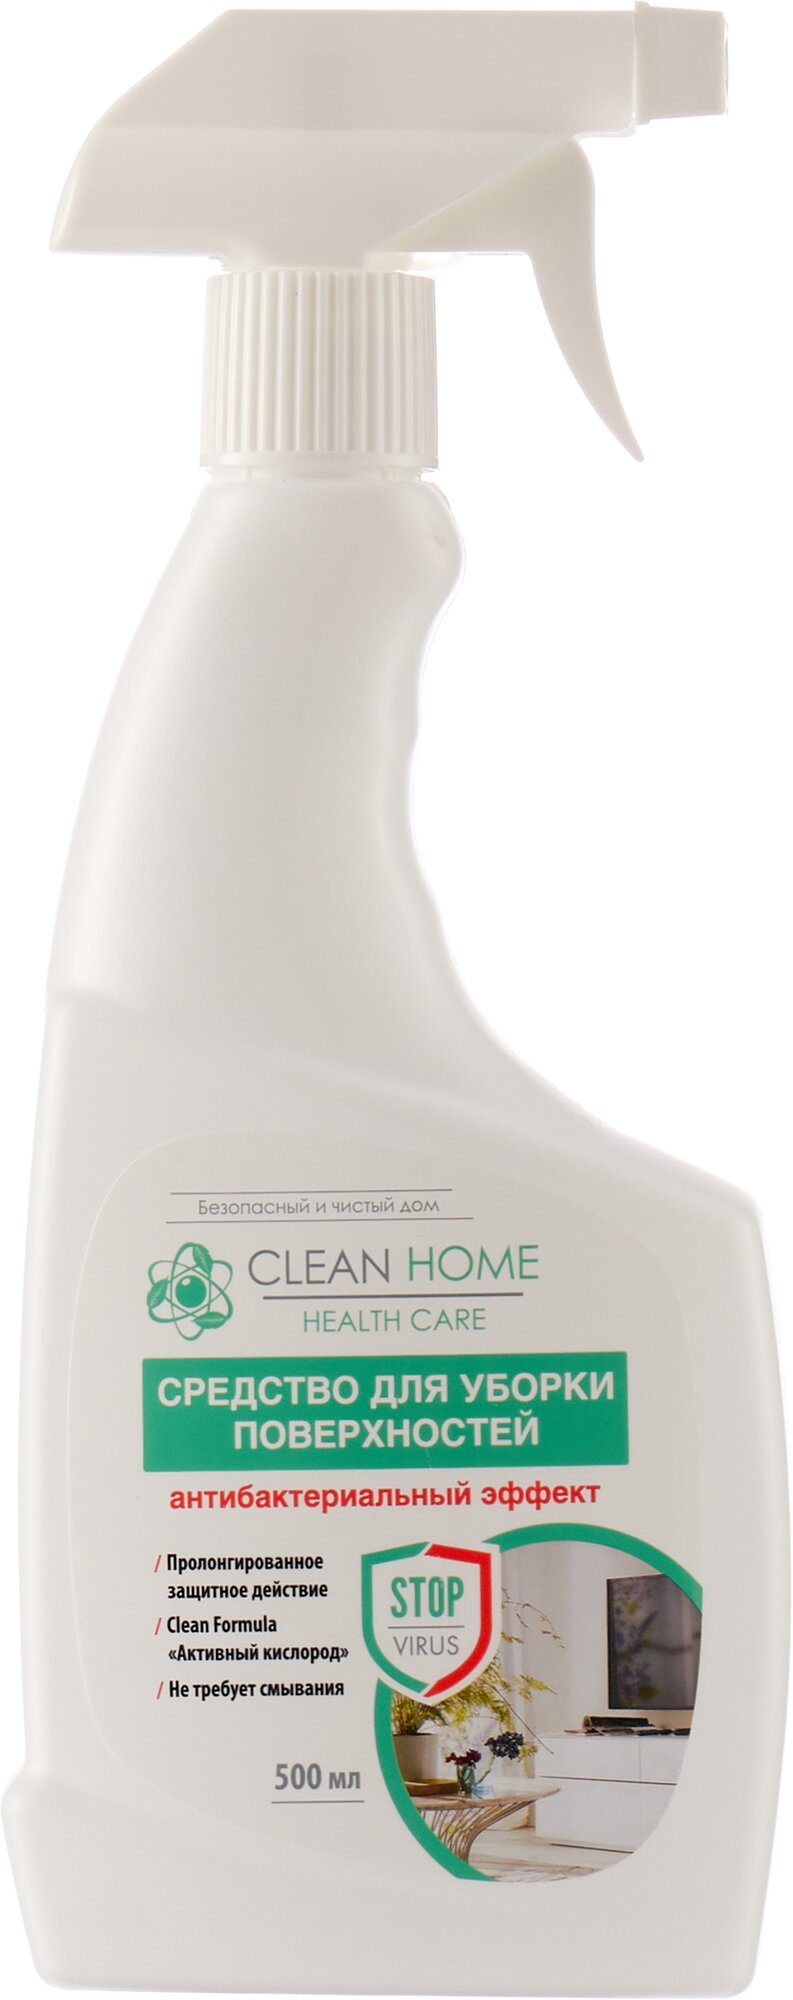 Clean Home Средство для уборки поверхностей Антибактериальный эффект